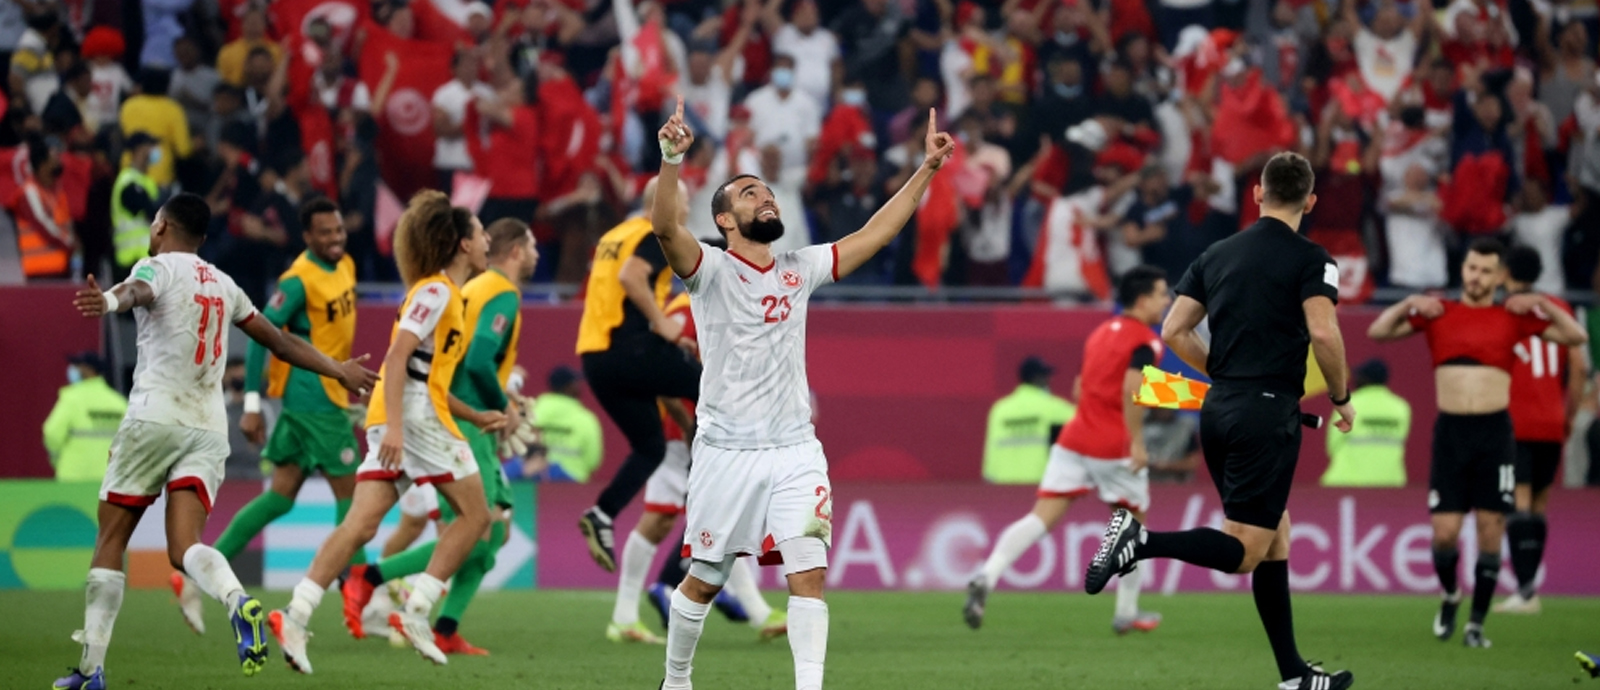 Tunisia 1-0 Egypt